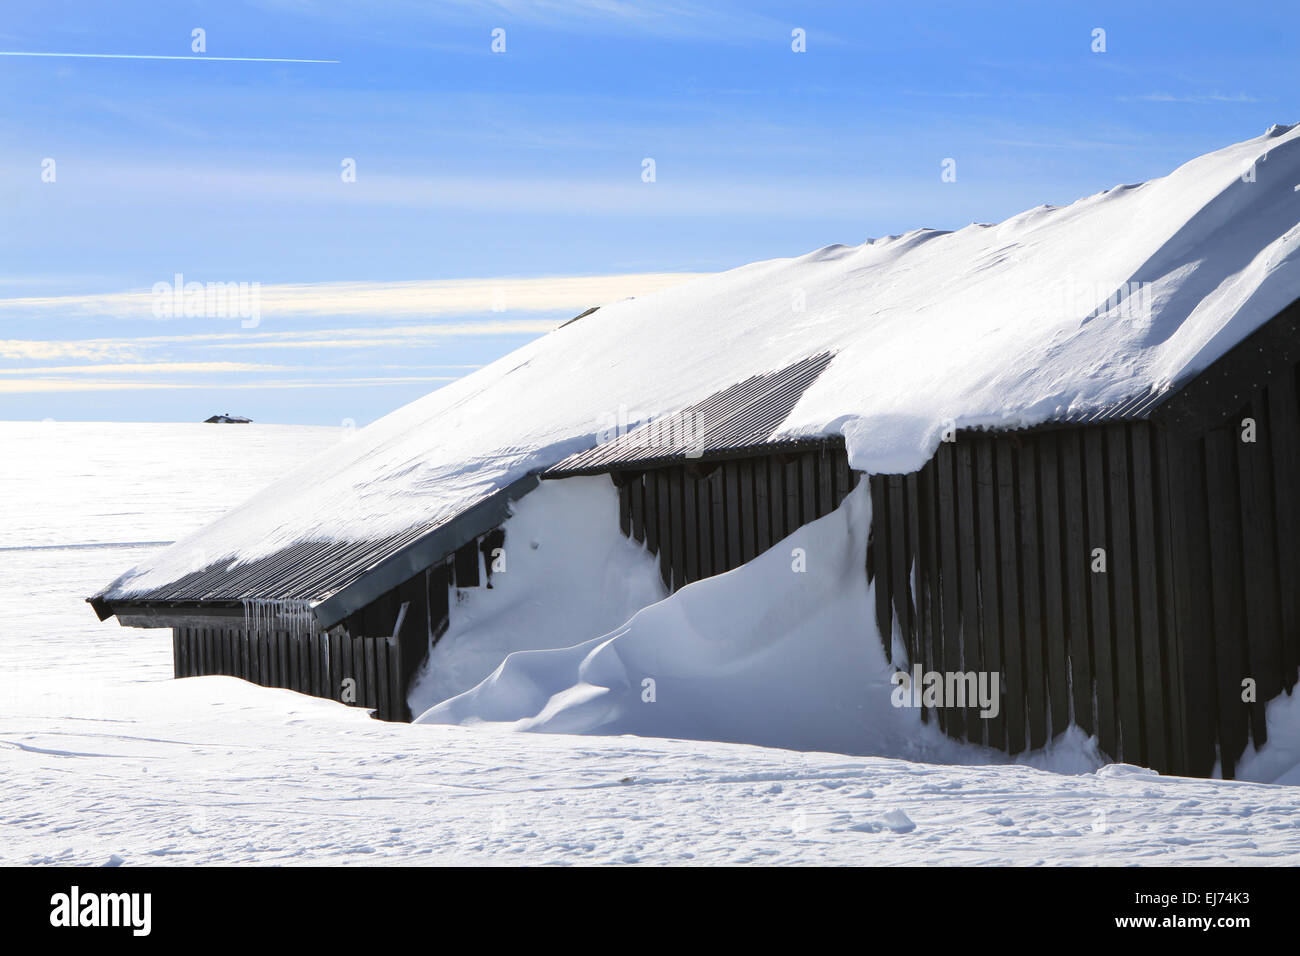 Les zones de sports d'hiver en Norvège Banque D'Images